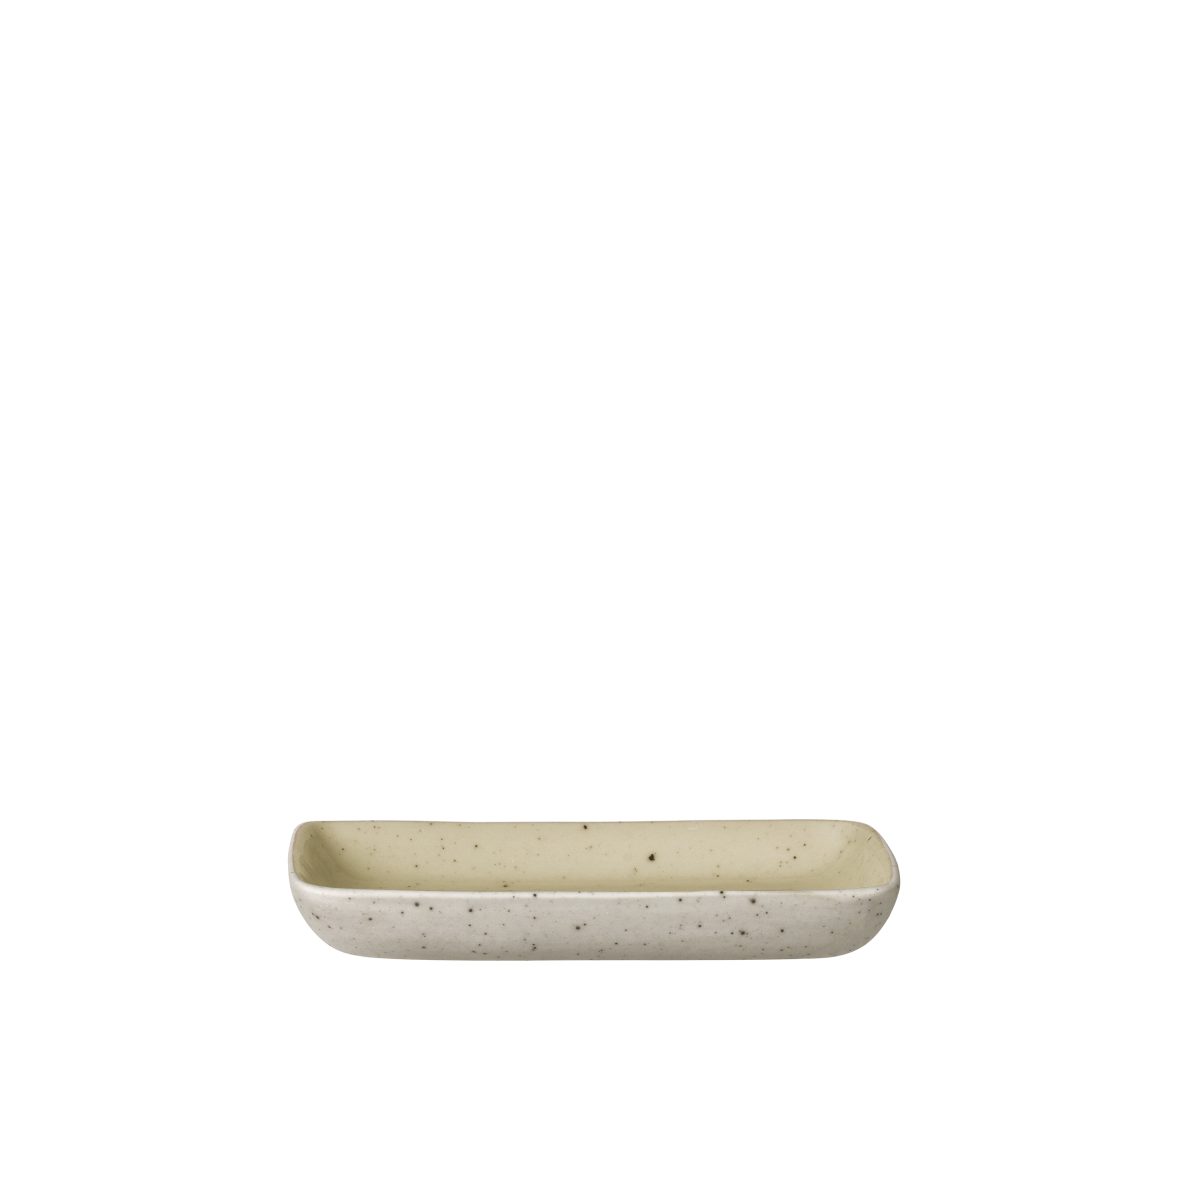 BLOMUS Правоъгълна чиния SABLO, S размер - цвят екрю-бежово (Savannah)